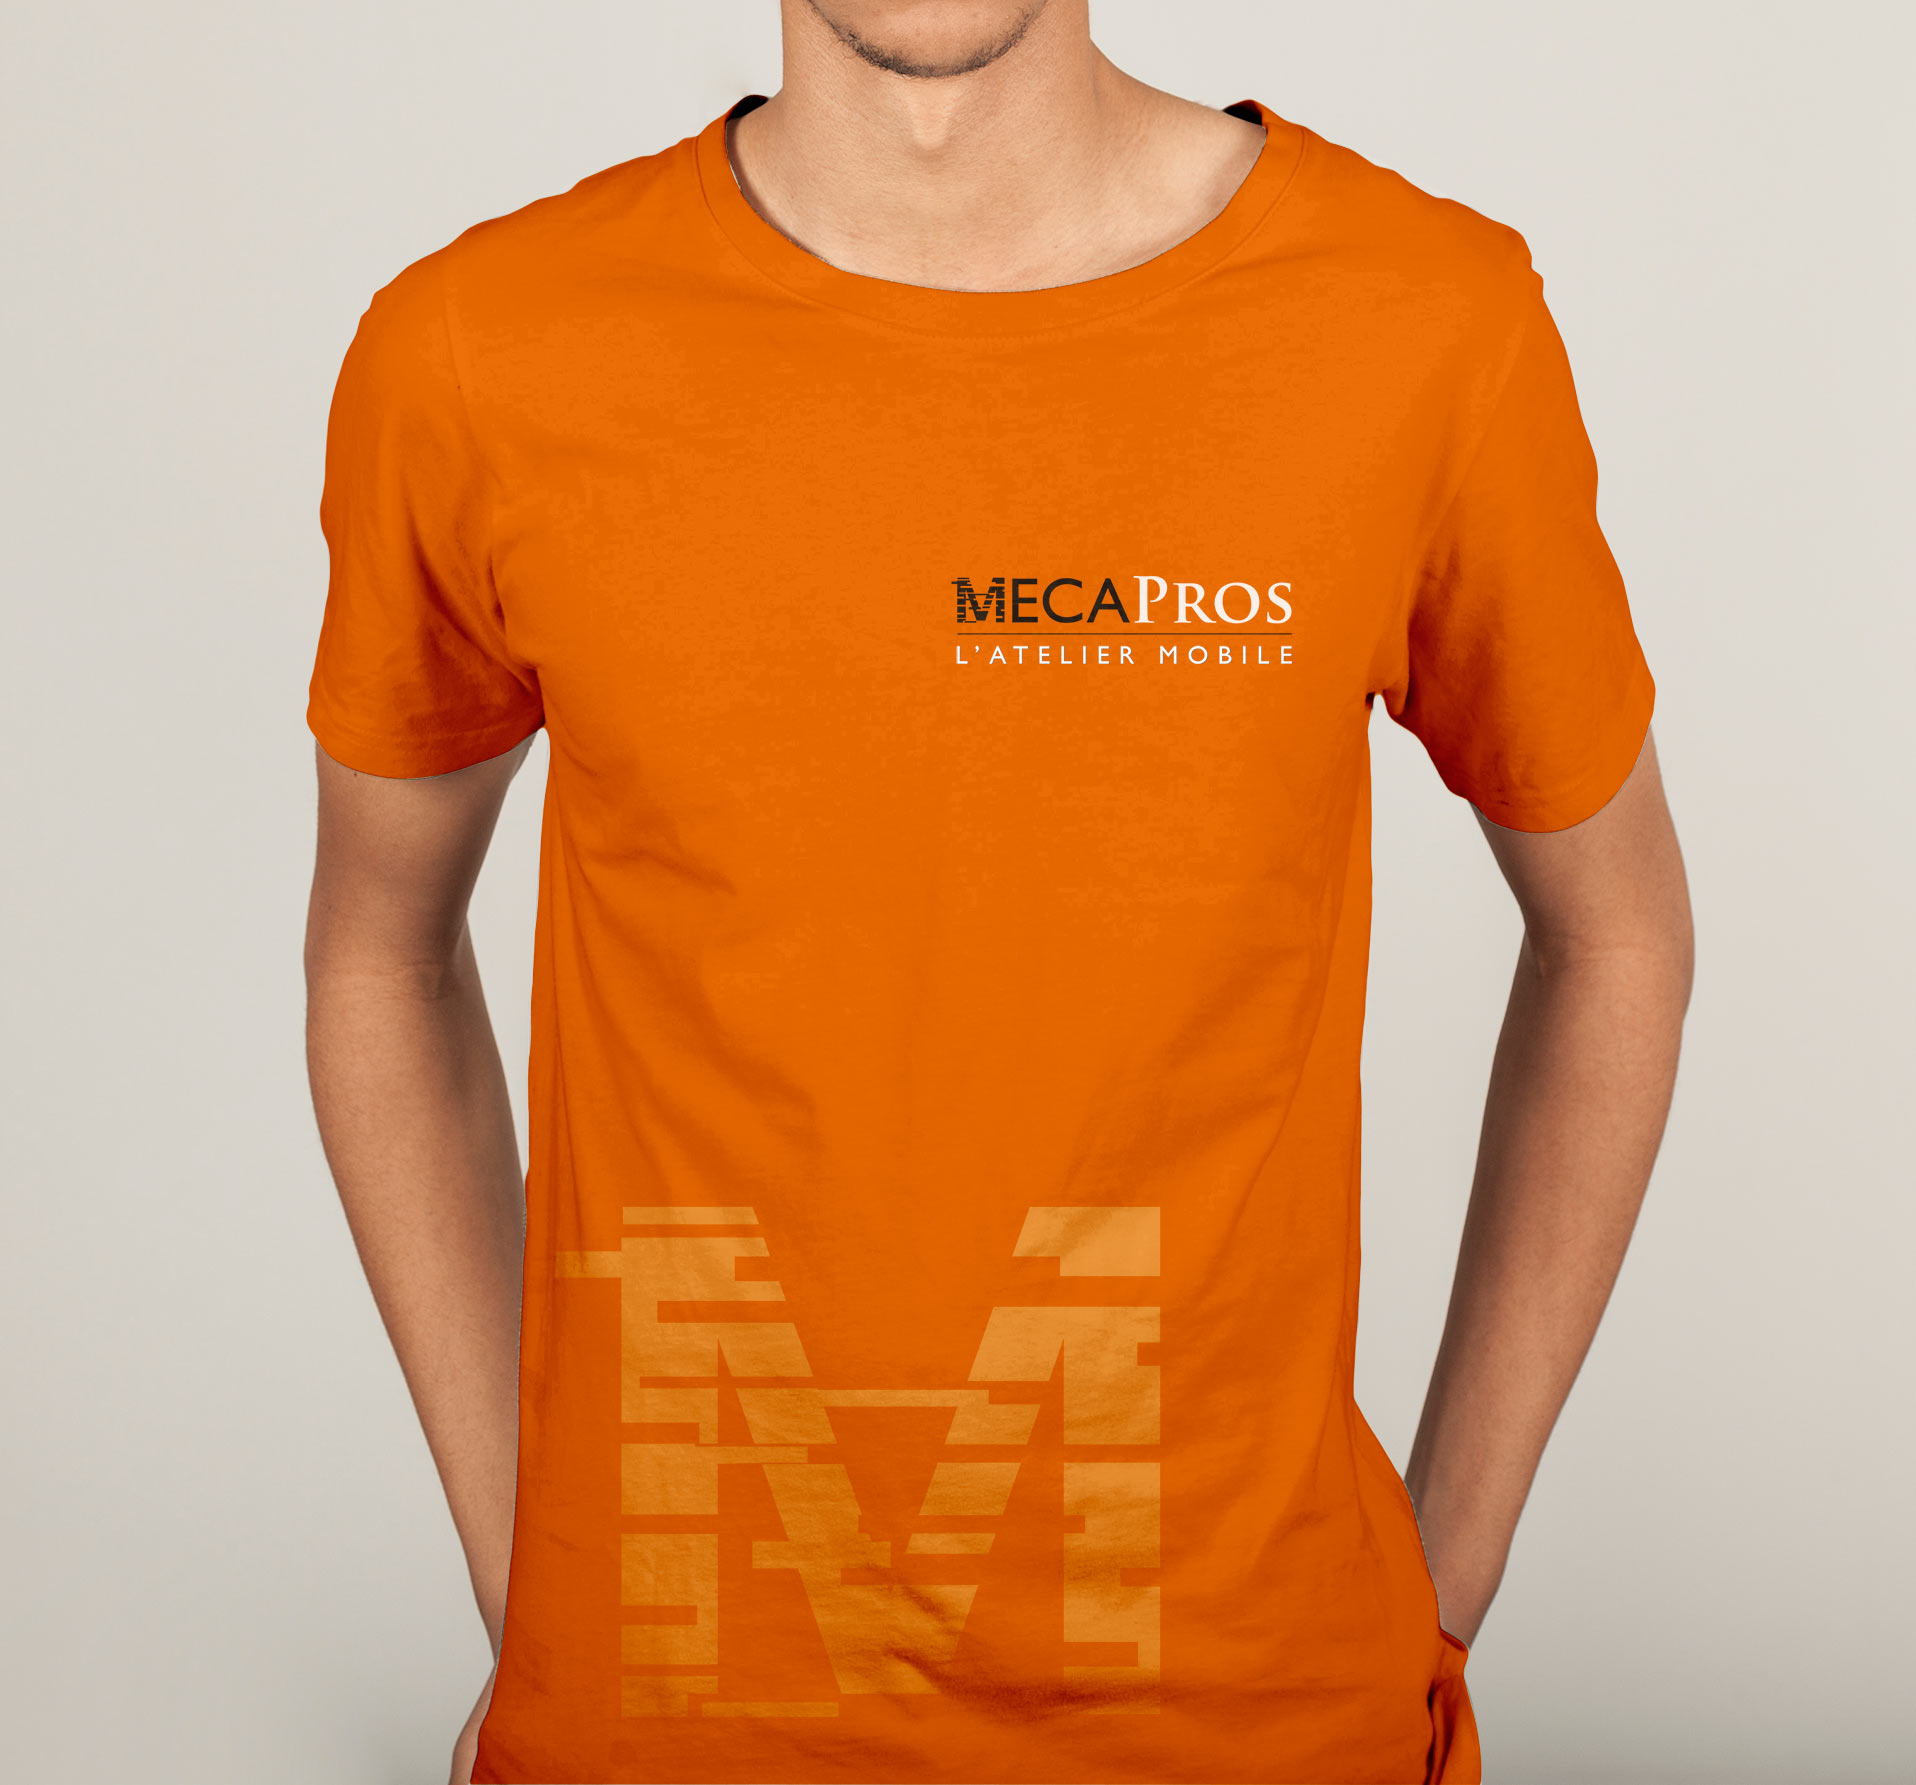 Meca-pros_Tshirt_1